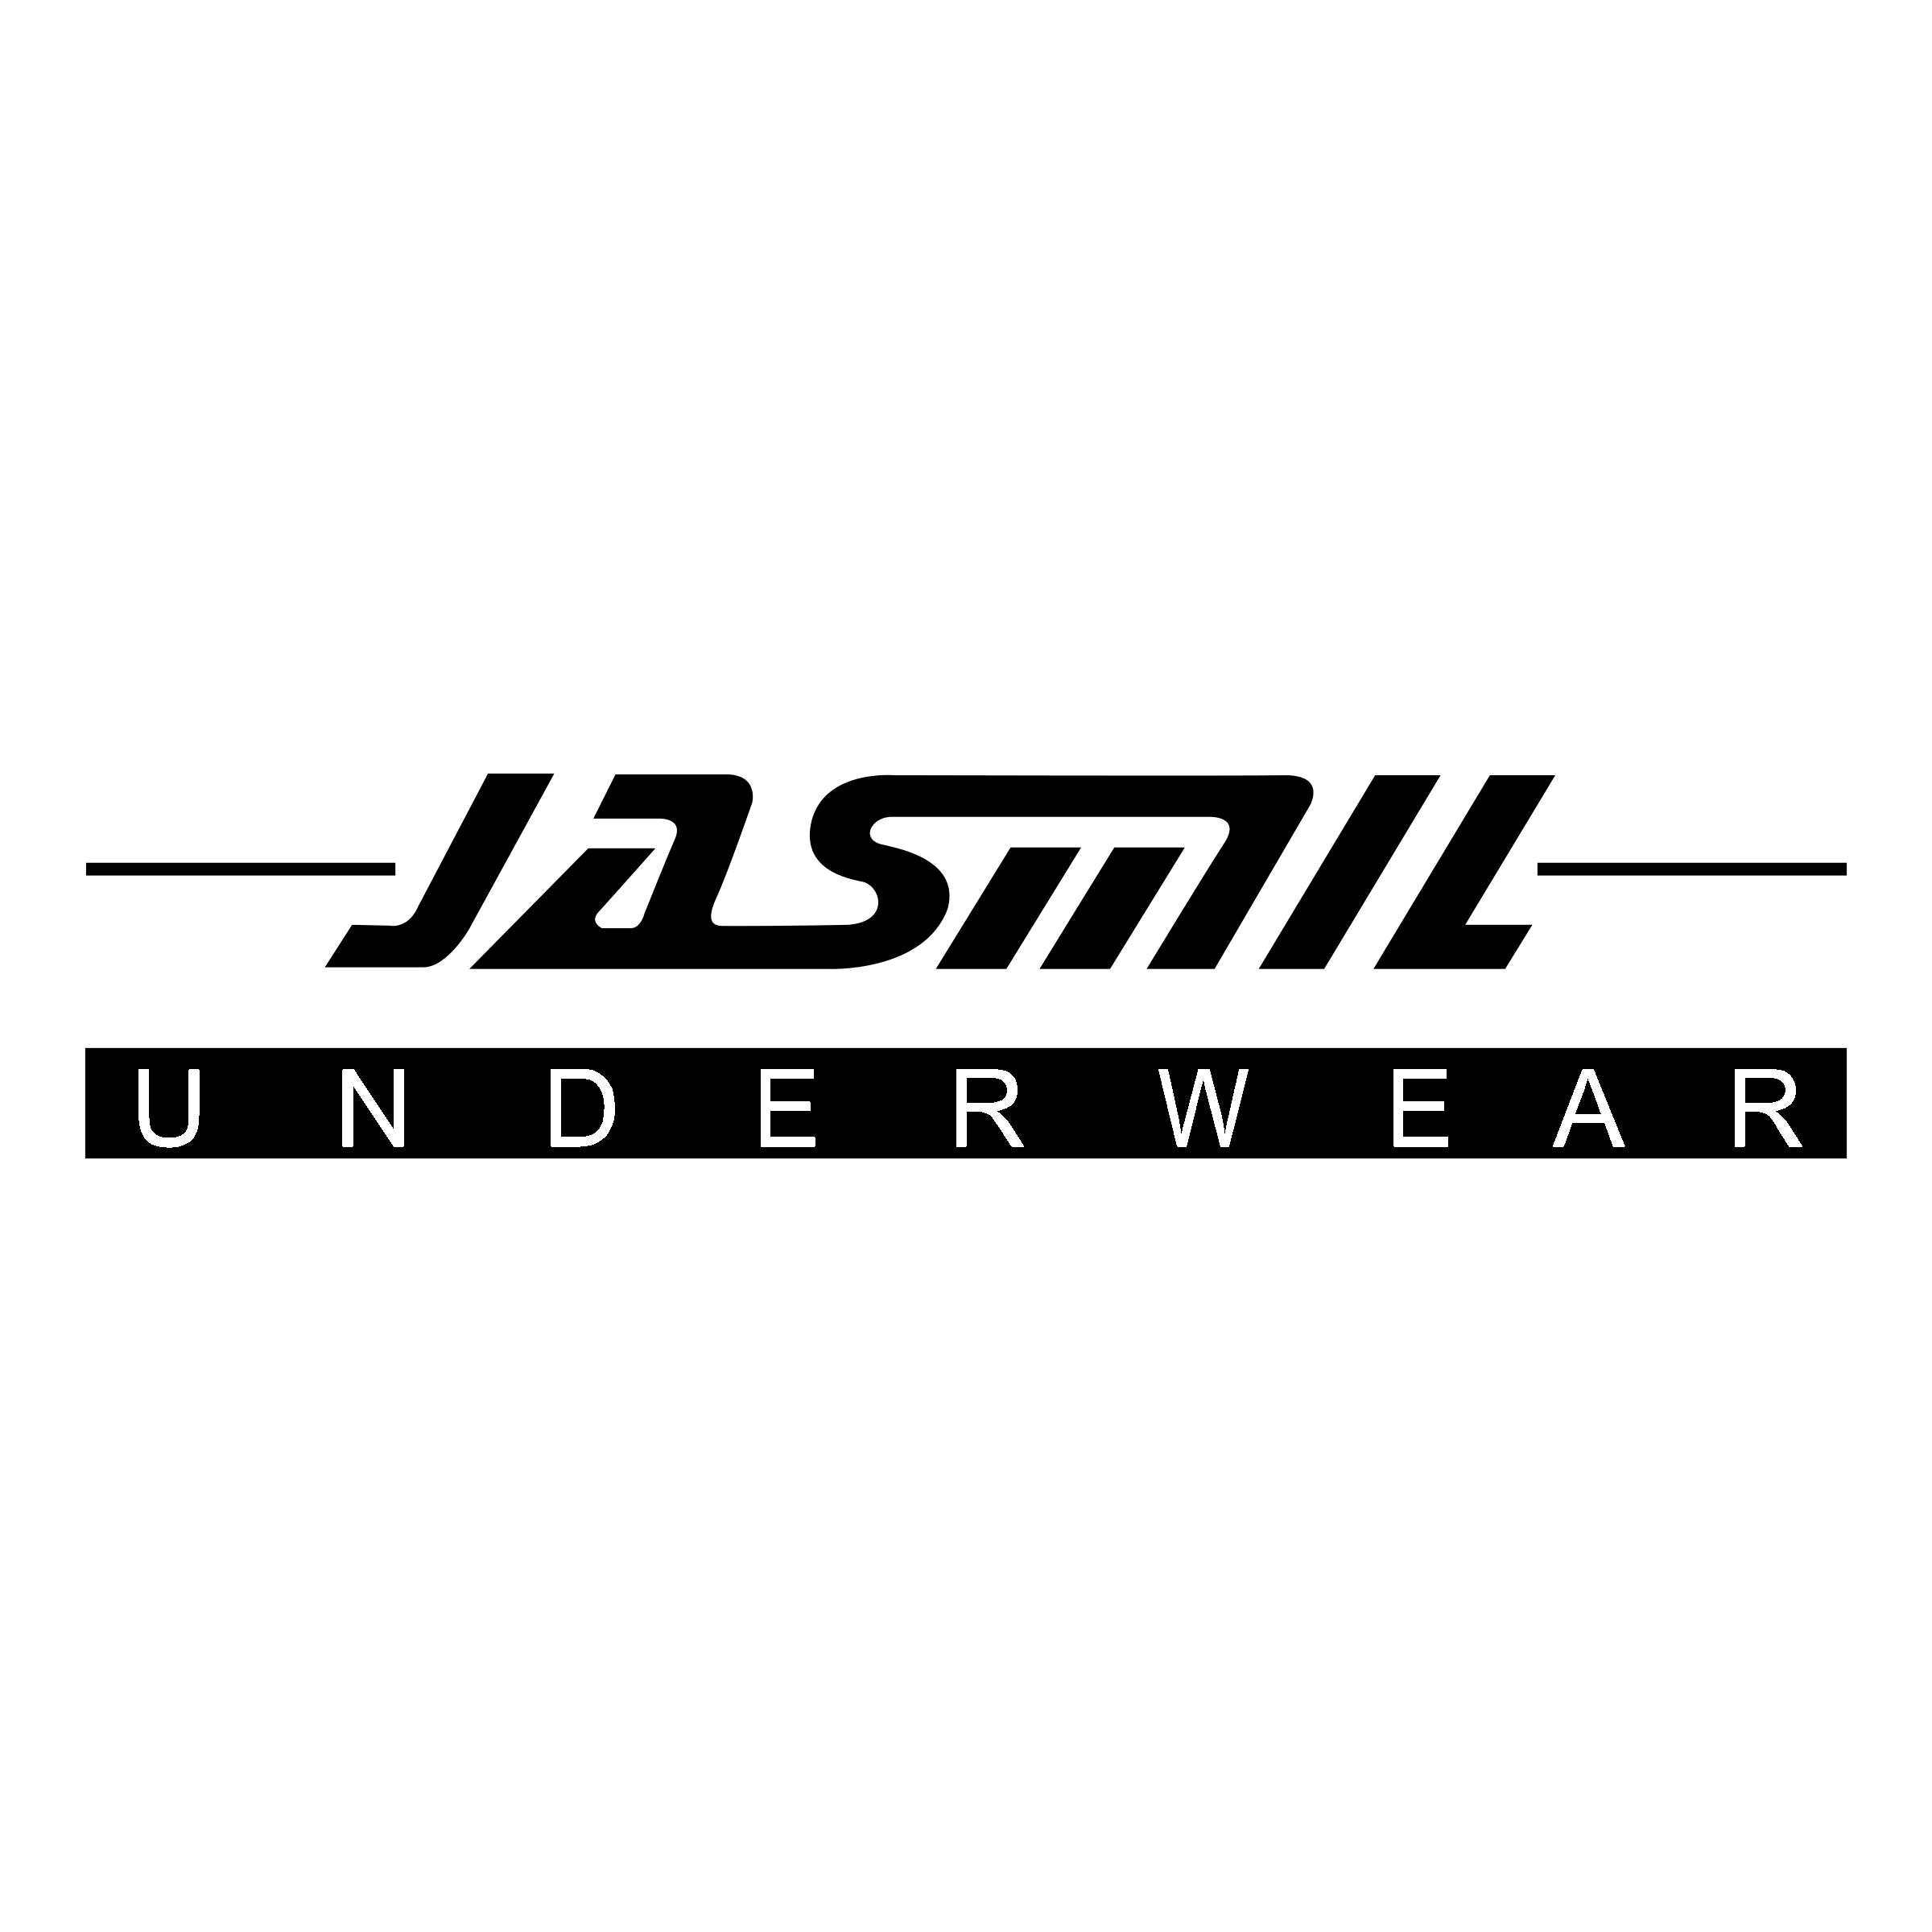 Underwear Logo - Jasmil underwear Logo PNG Transparent & SVG Vector - Freebie Supply